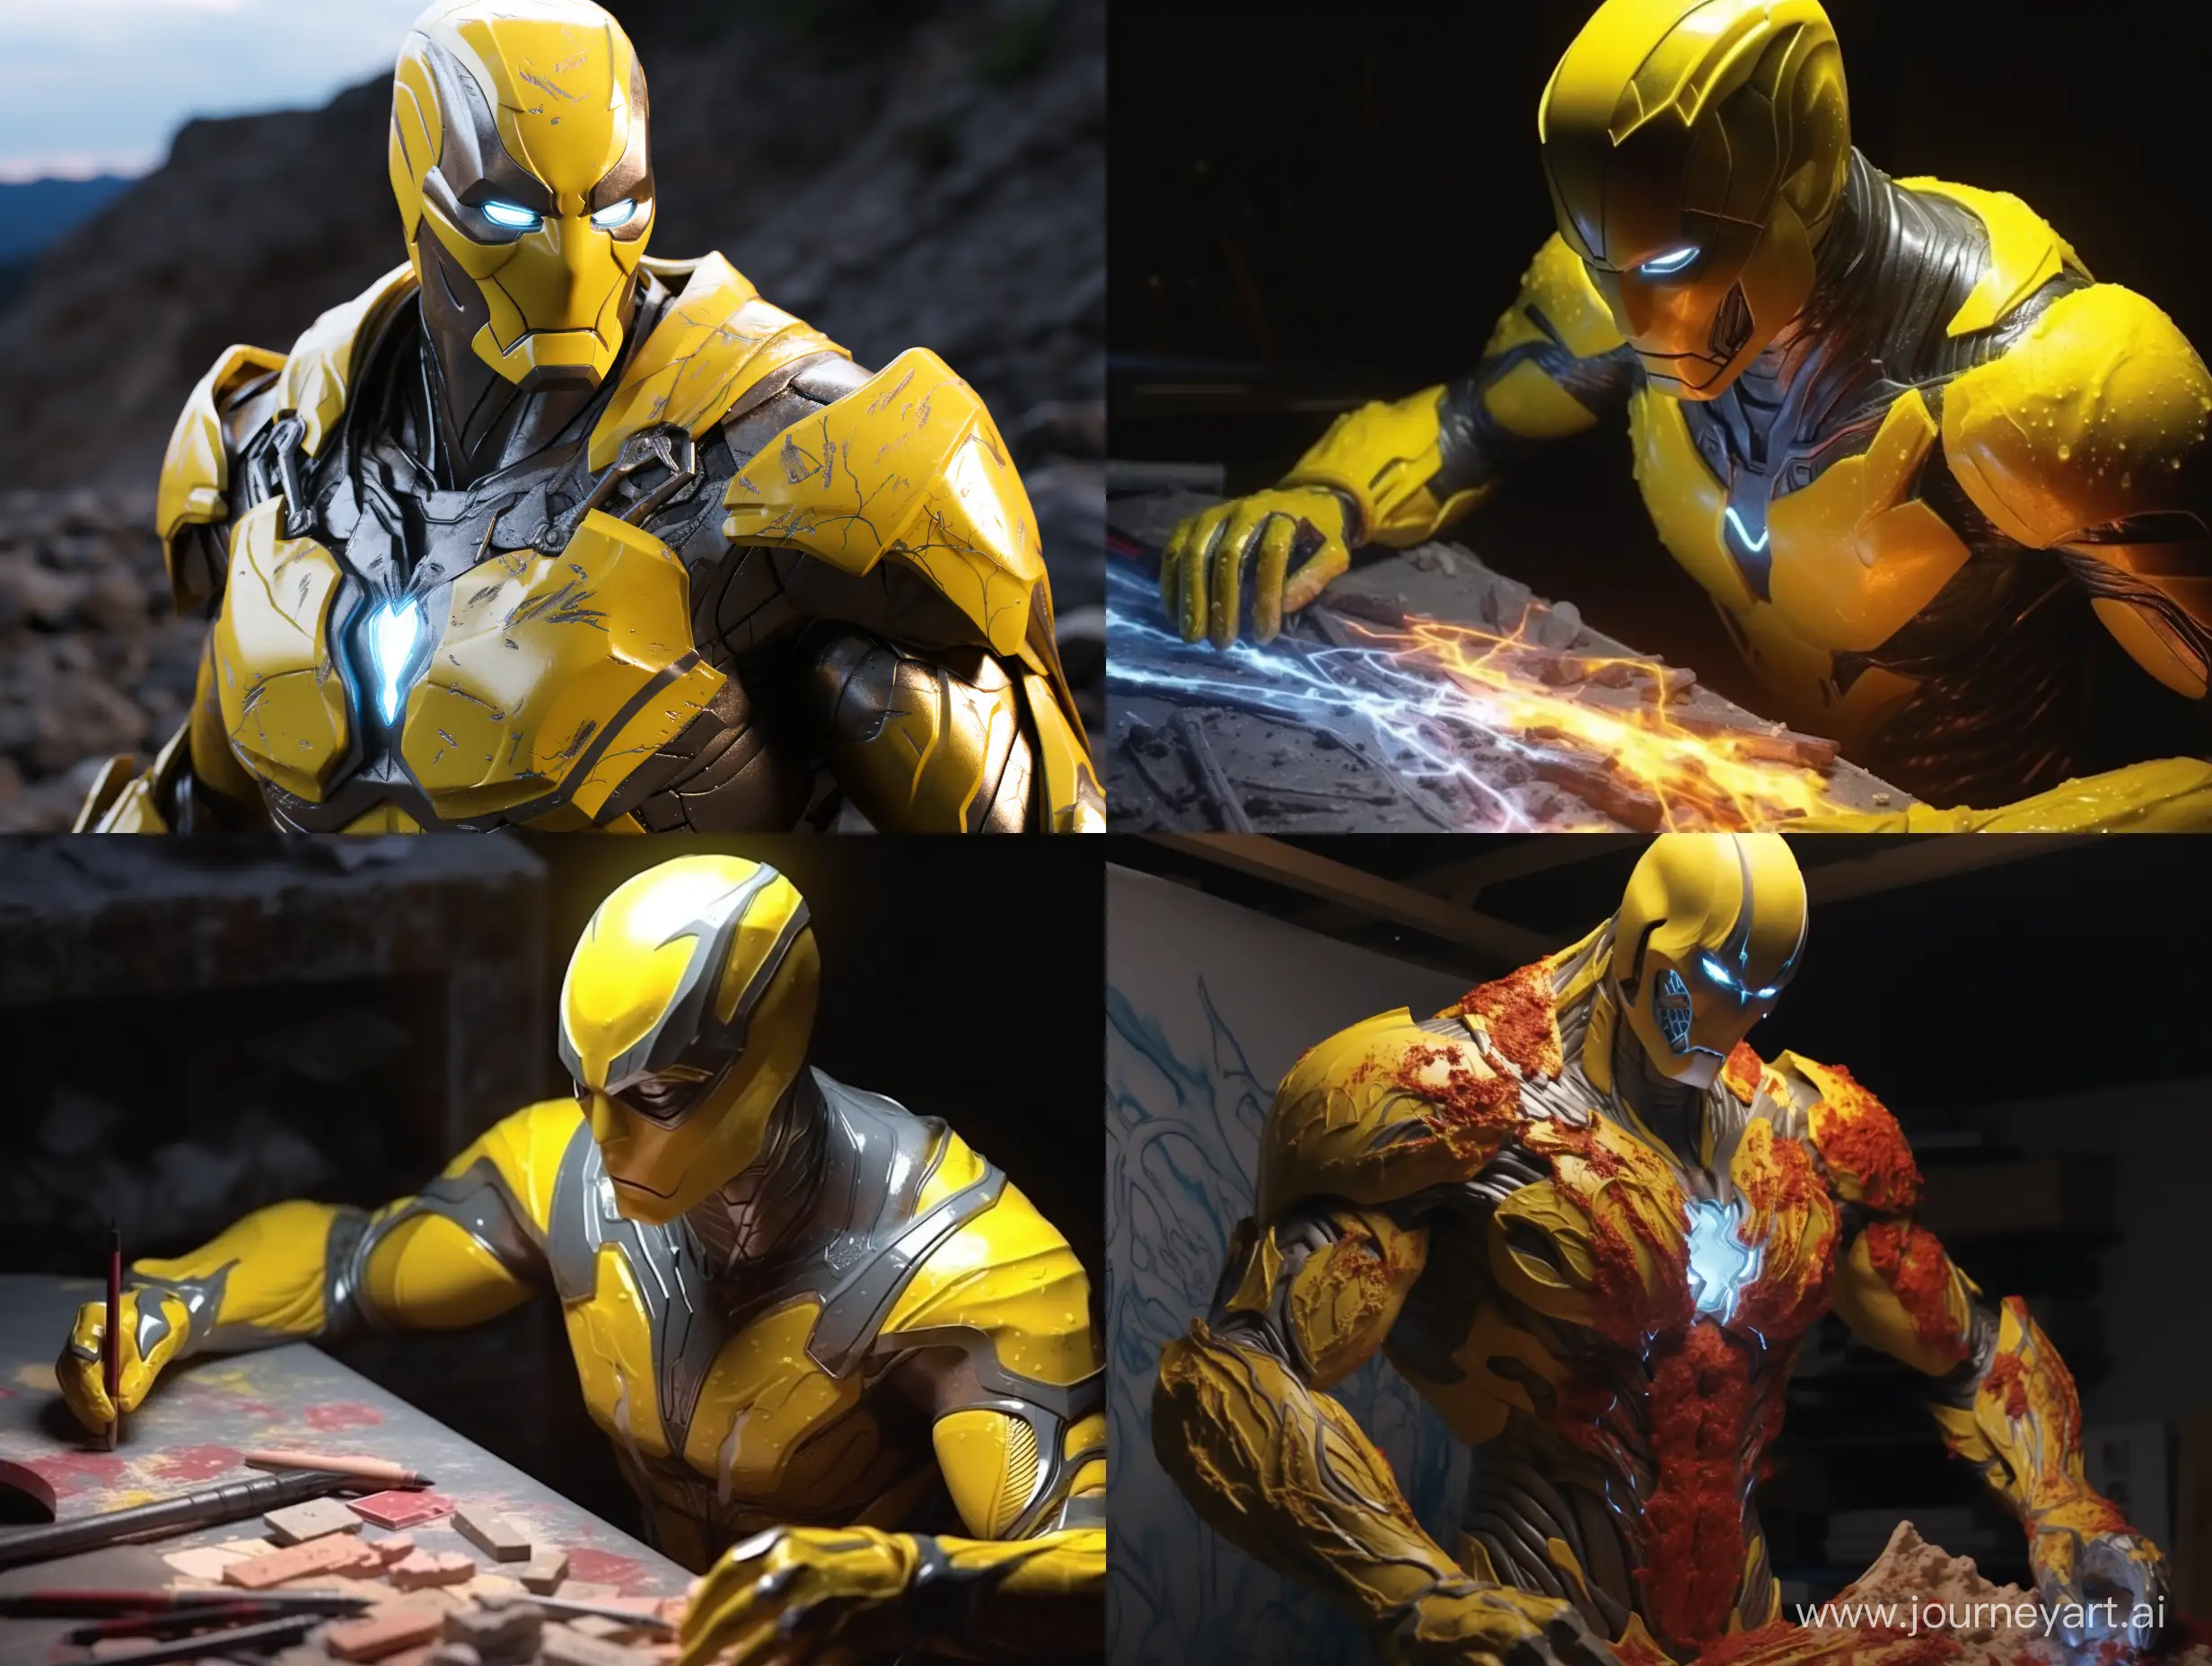 Epic-Battle-Yellow-Ironman-vs-Batman-in-Realistic-8K-Hyperdetail